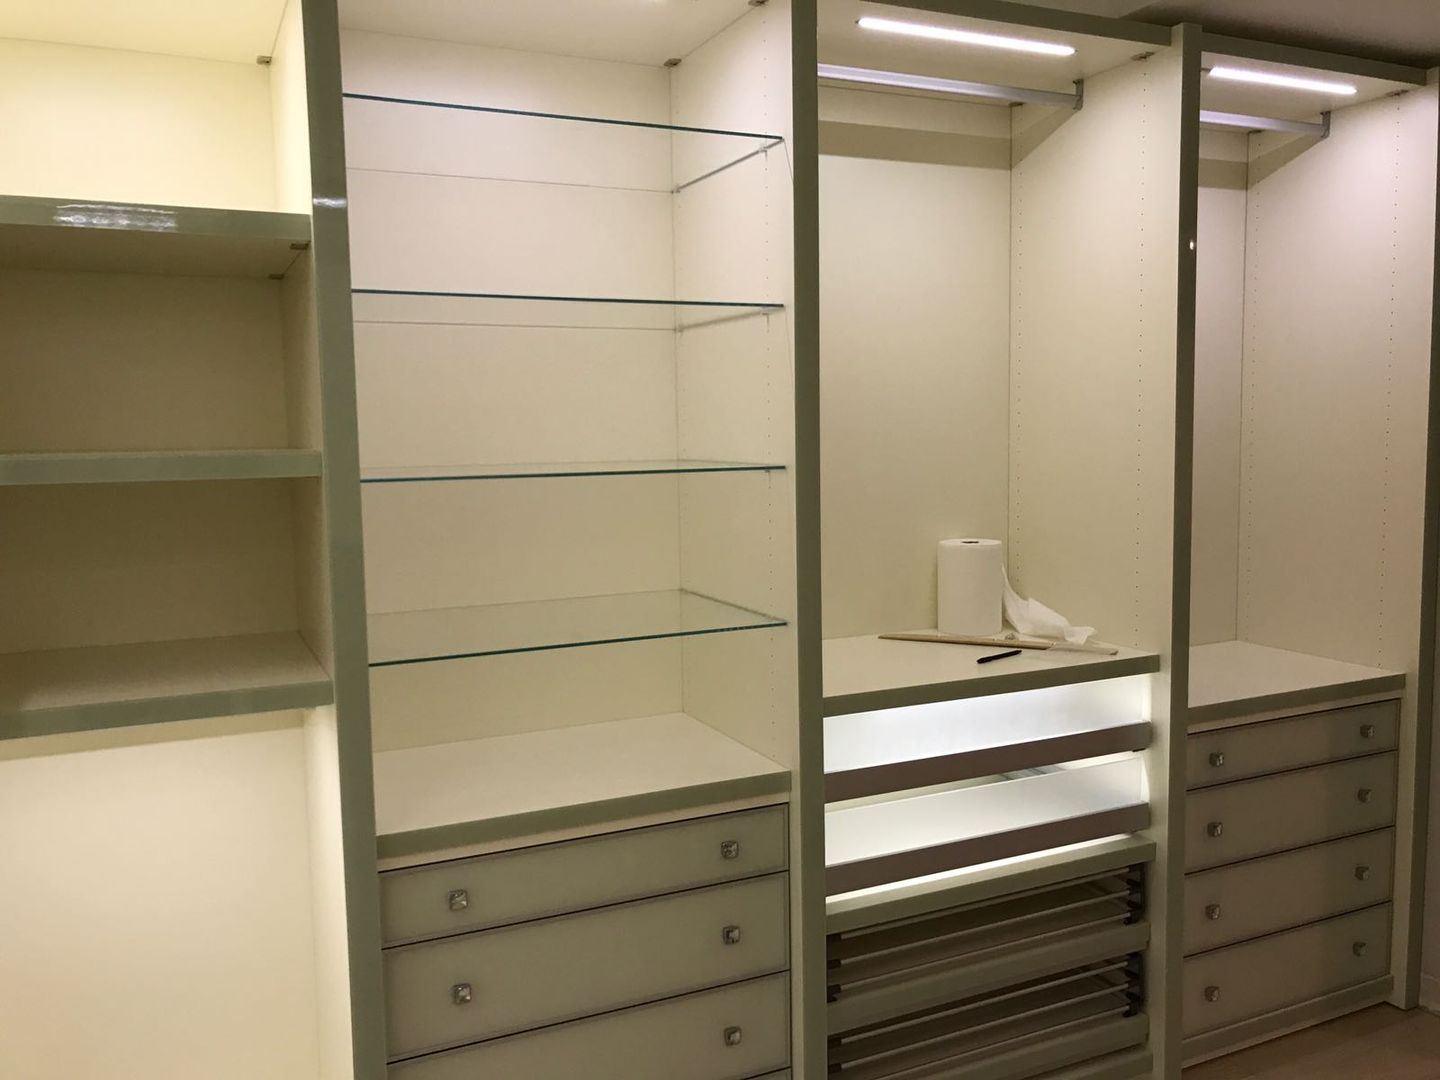 Cabinet dolap sistemleri proje çalışması, CABINET CABINET Classic style dressing room